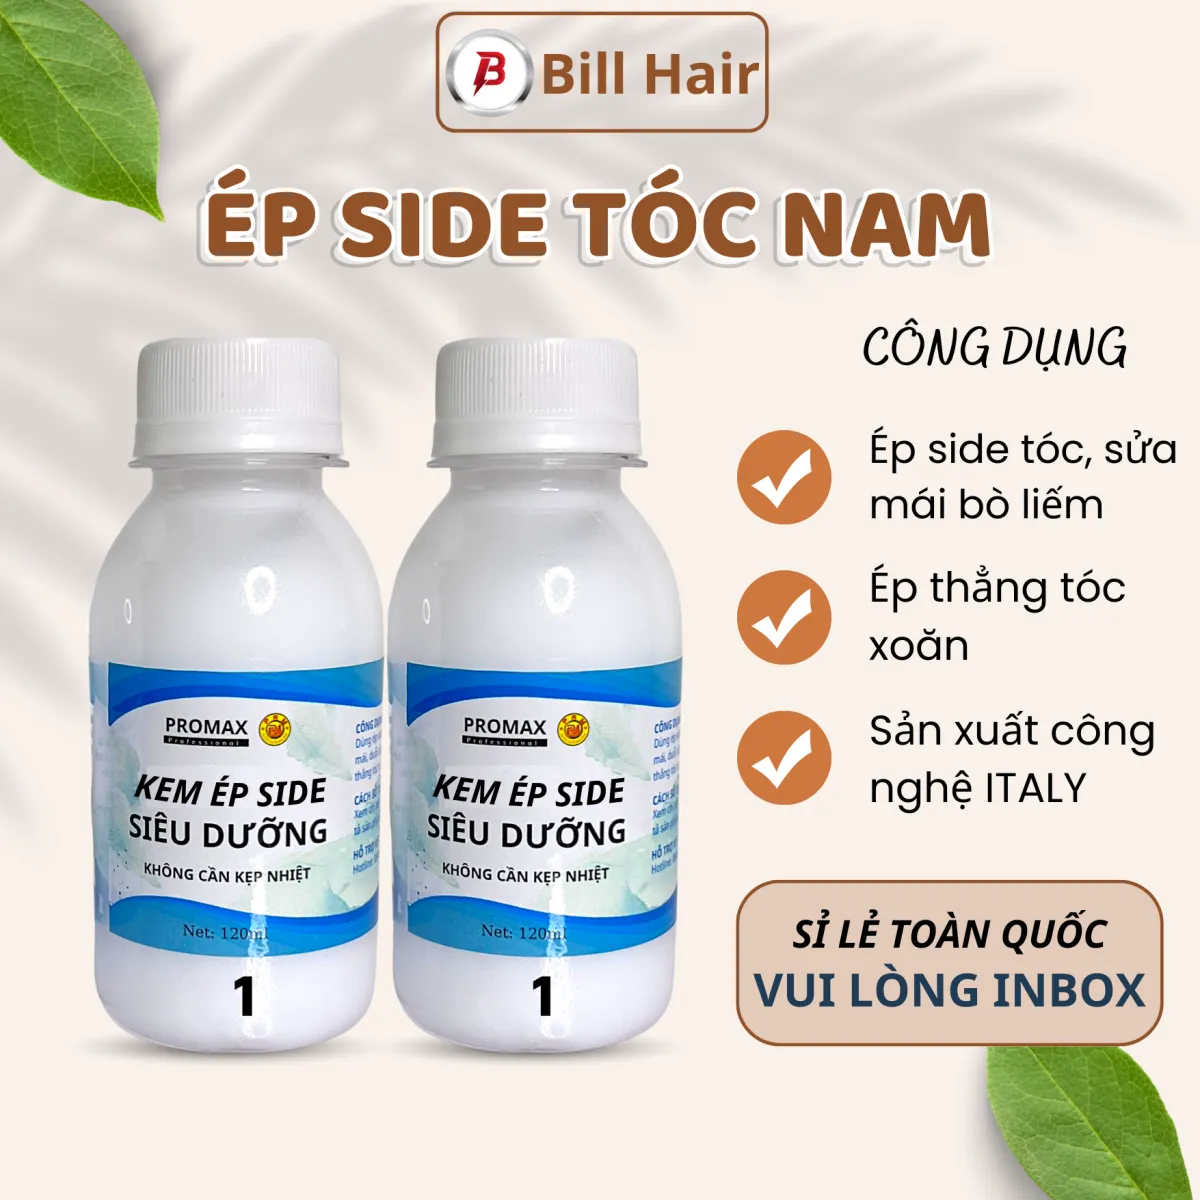 REVIEW Thuốc duỗi tóc Kella  giá rẻ dành riêng cho người Việt